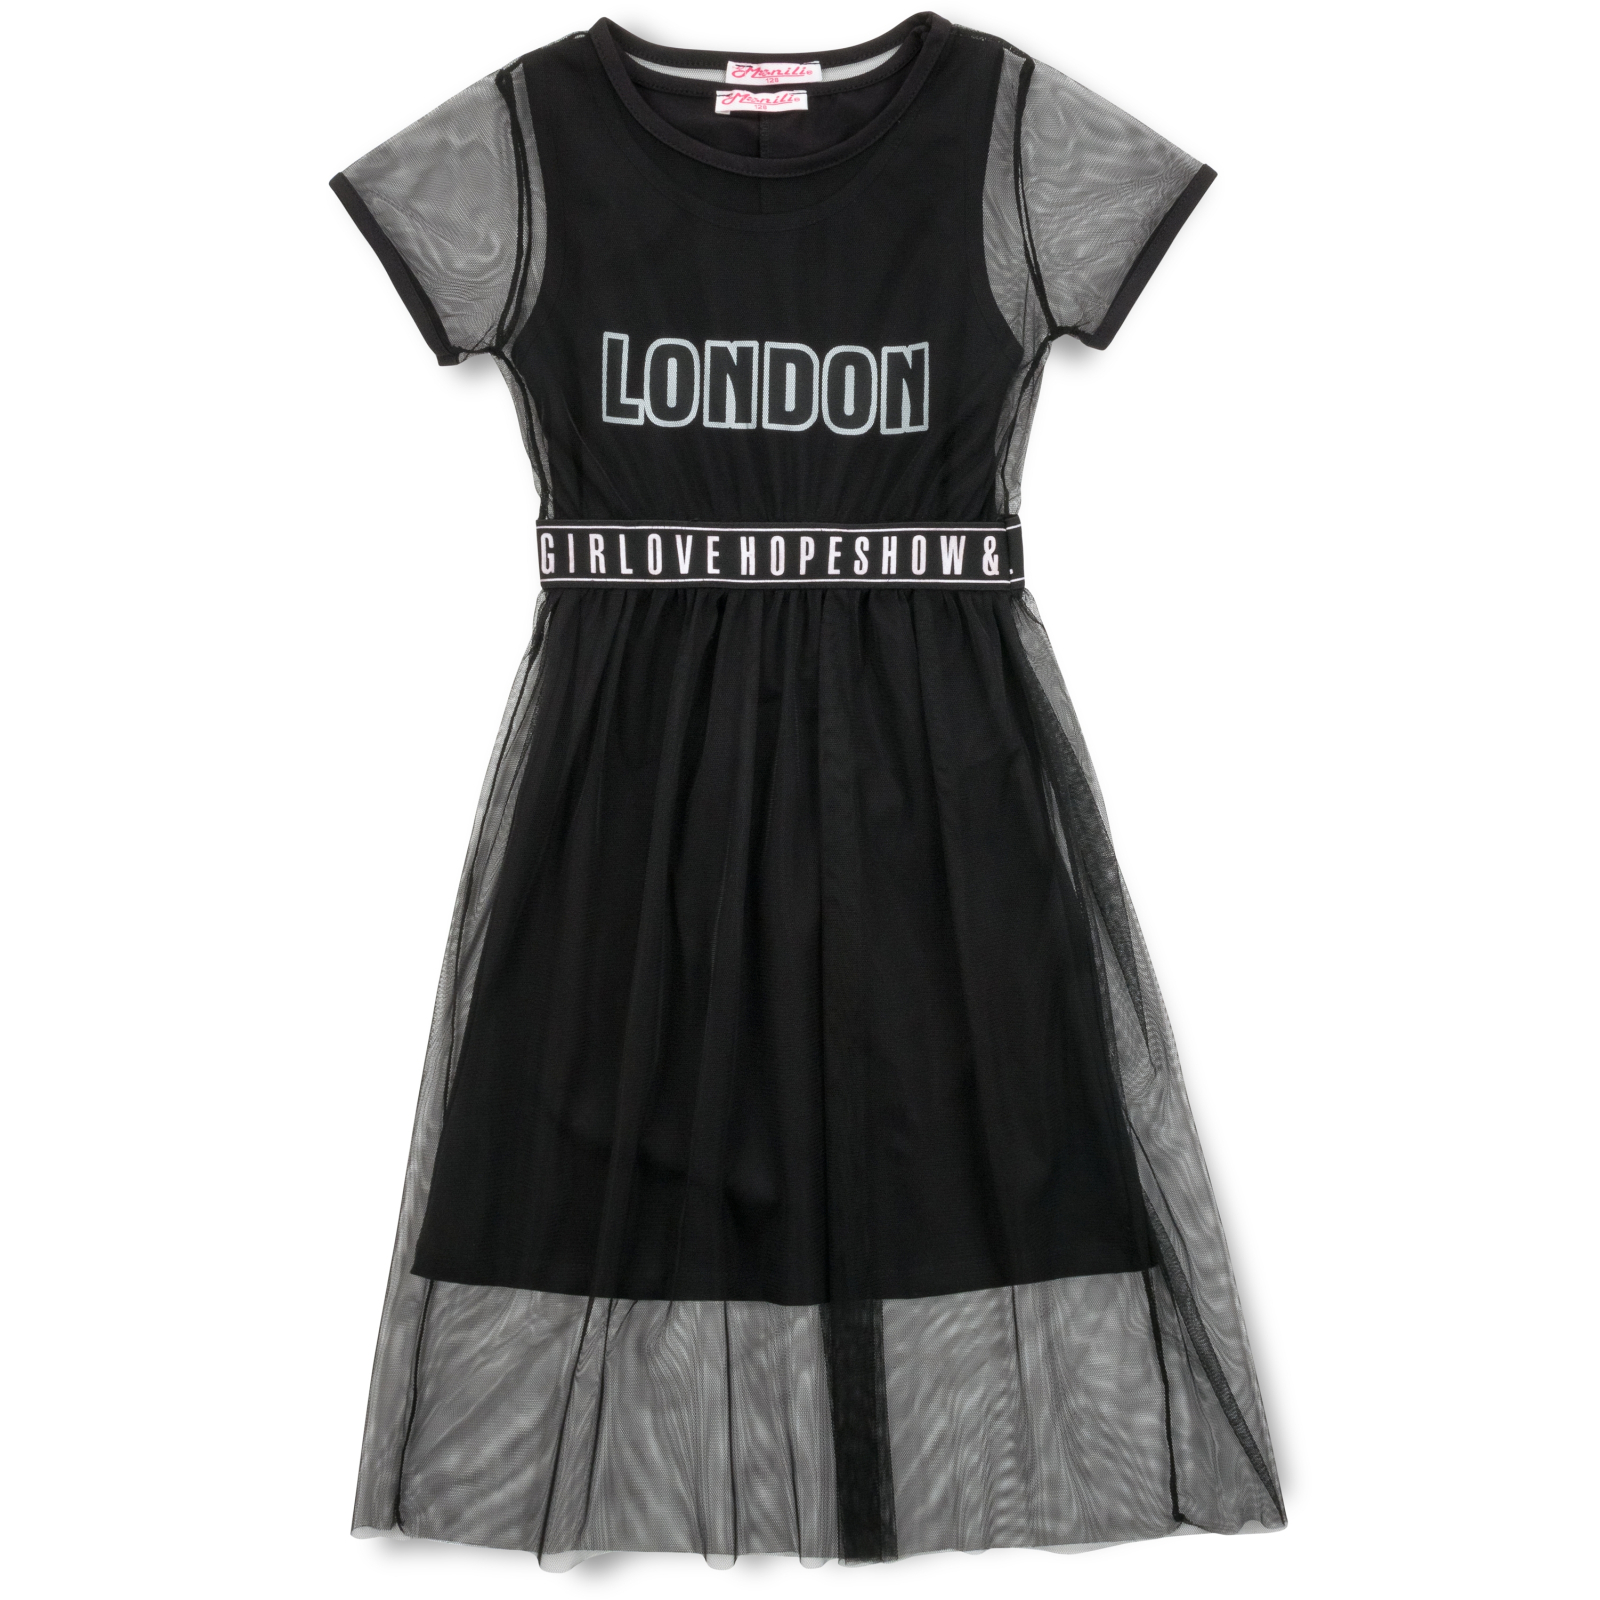 Платье Monili с сеткой (9016-140G-black)